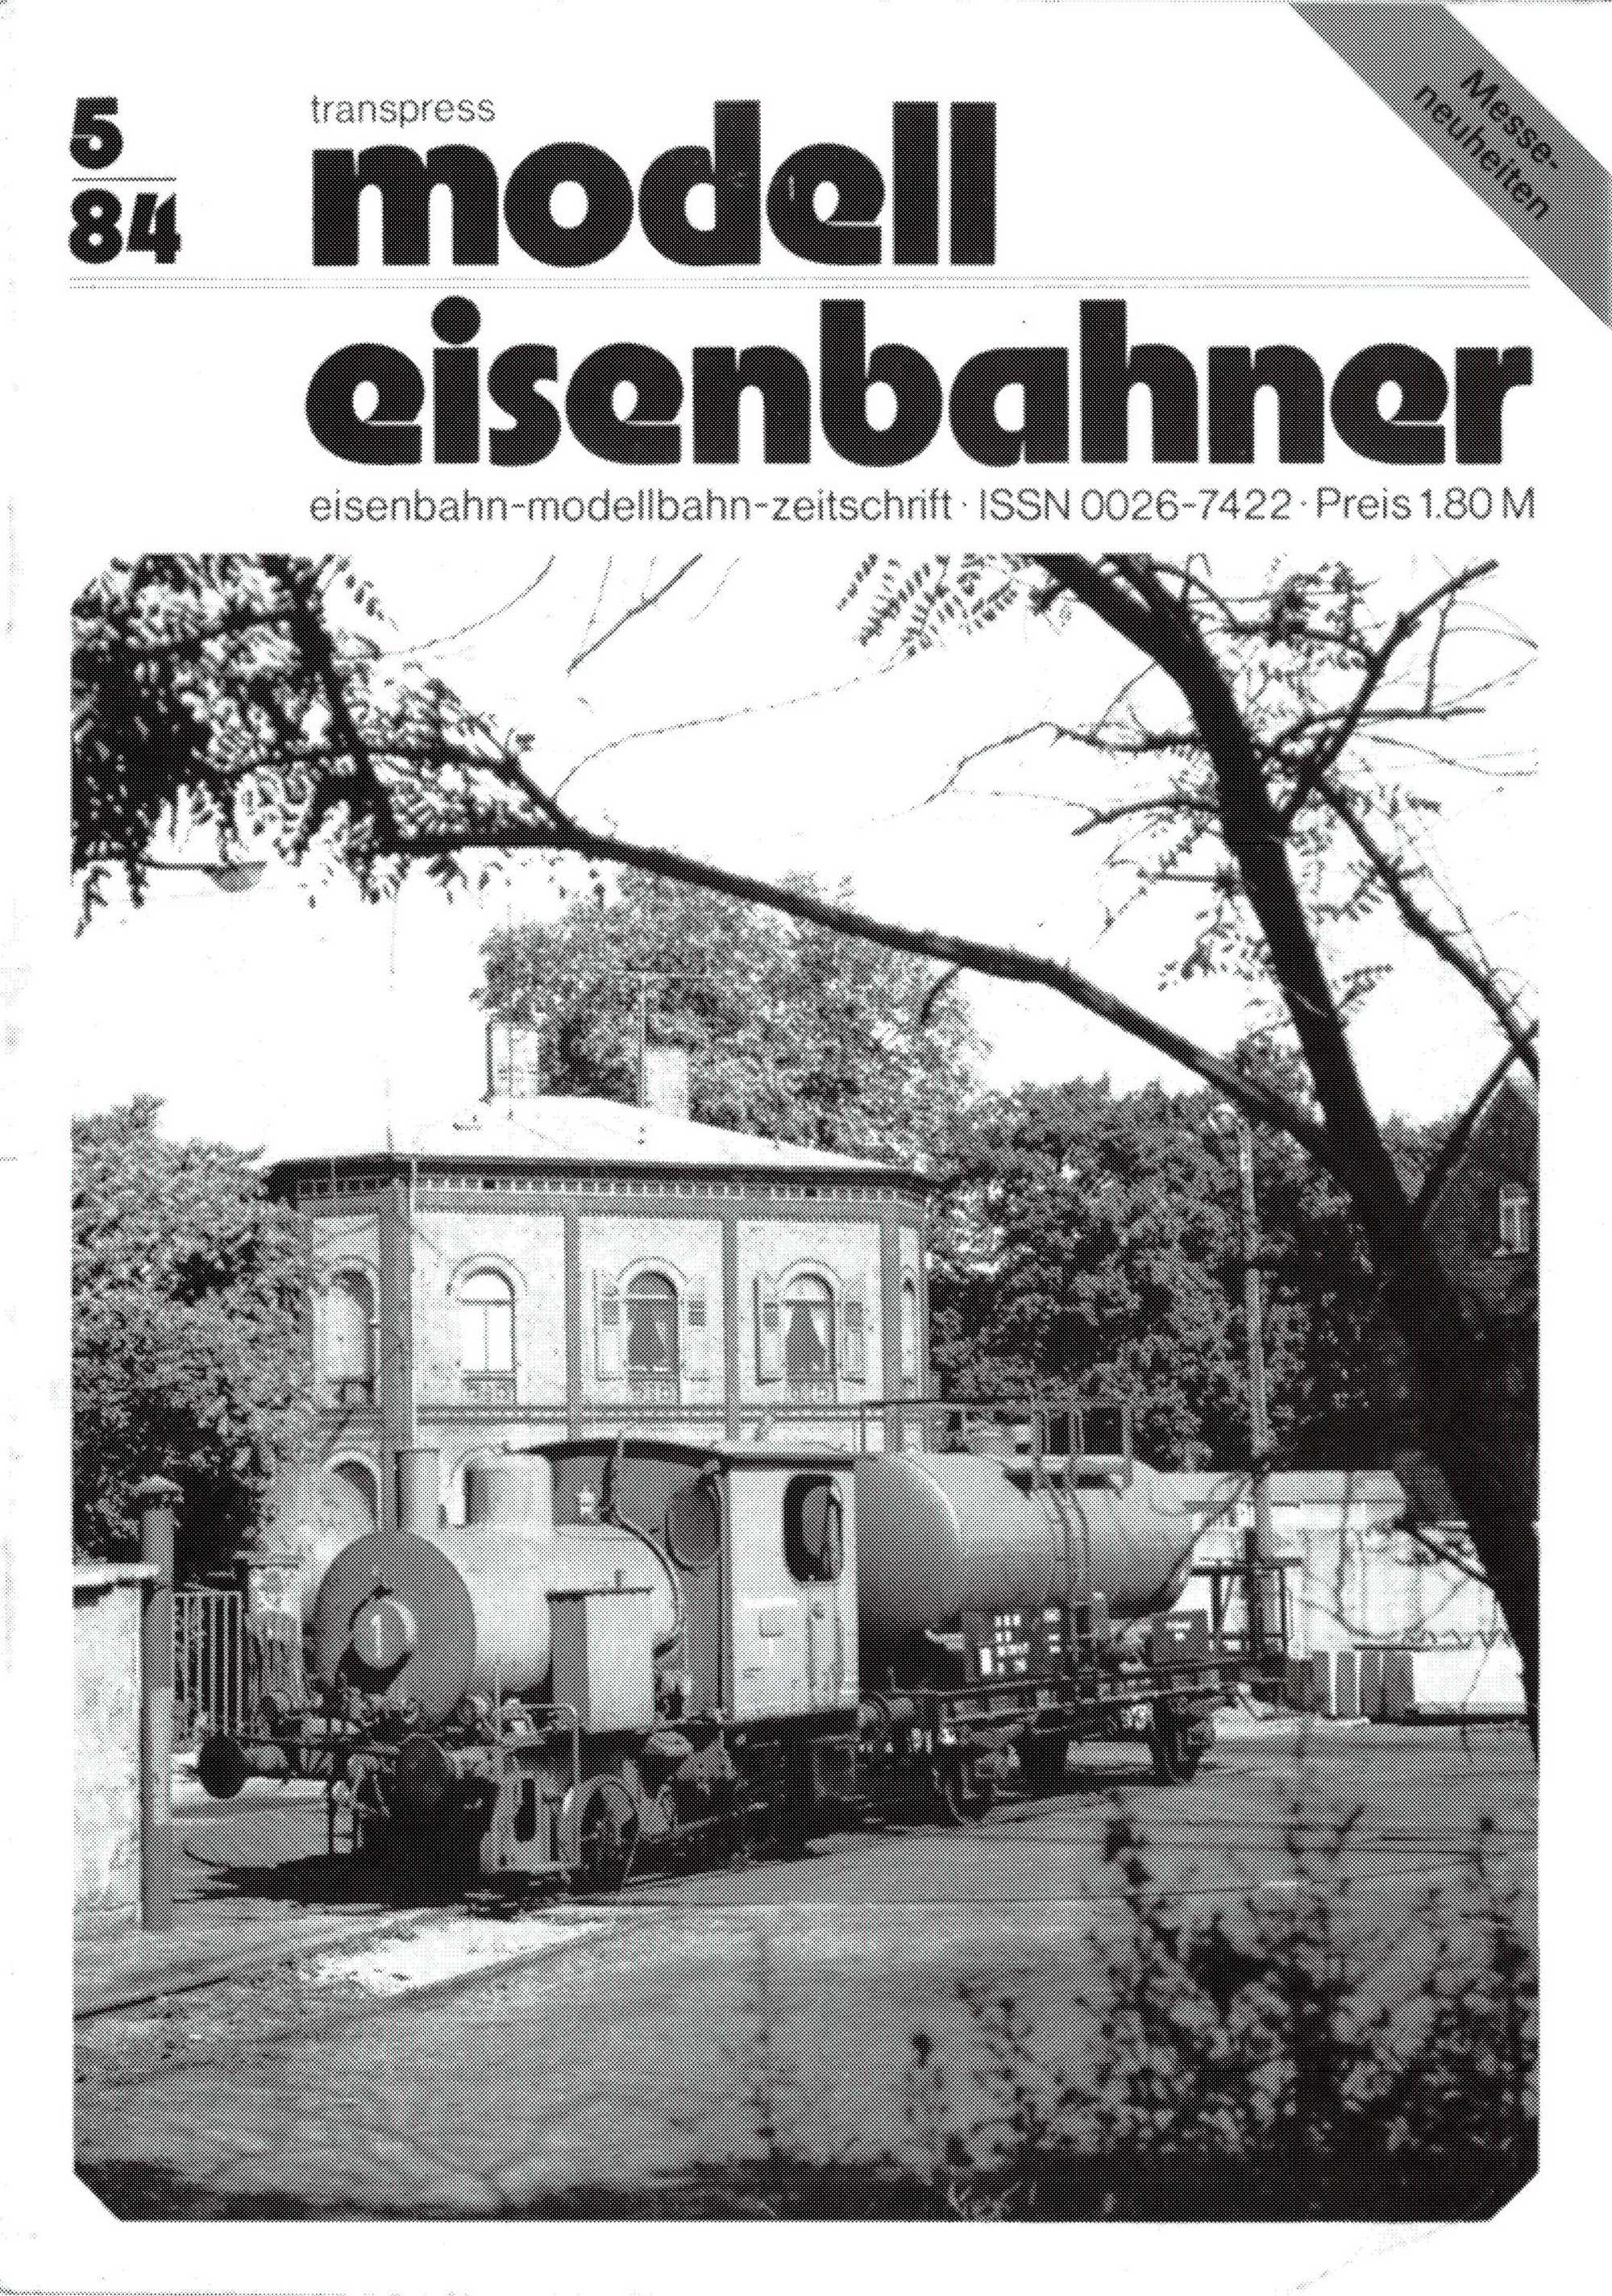 Auf dem Titelbild des Modelleisenbahner Ausgabe 5/1984 war die Lok im Einsatz abgebildet.